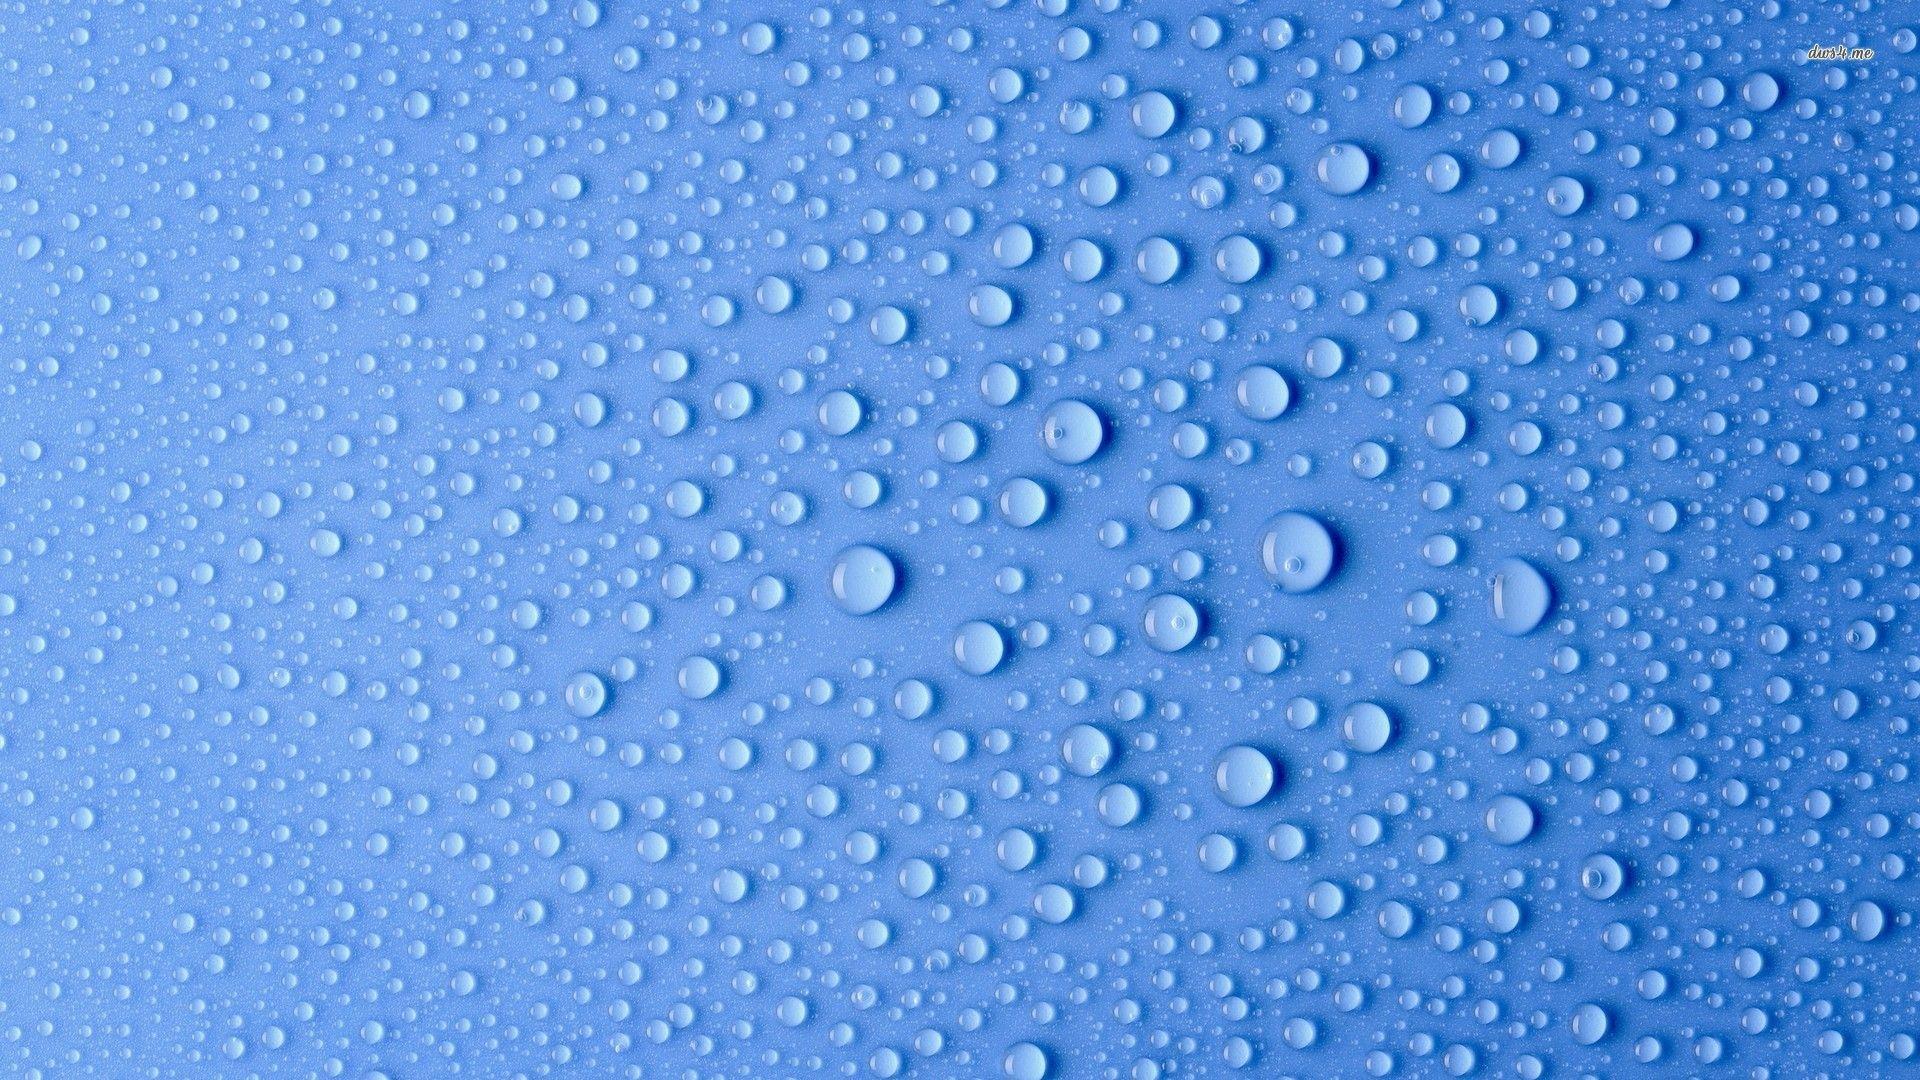 Water Drop Wallpaper FHDQ. Water Drop Wallpaper, Background